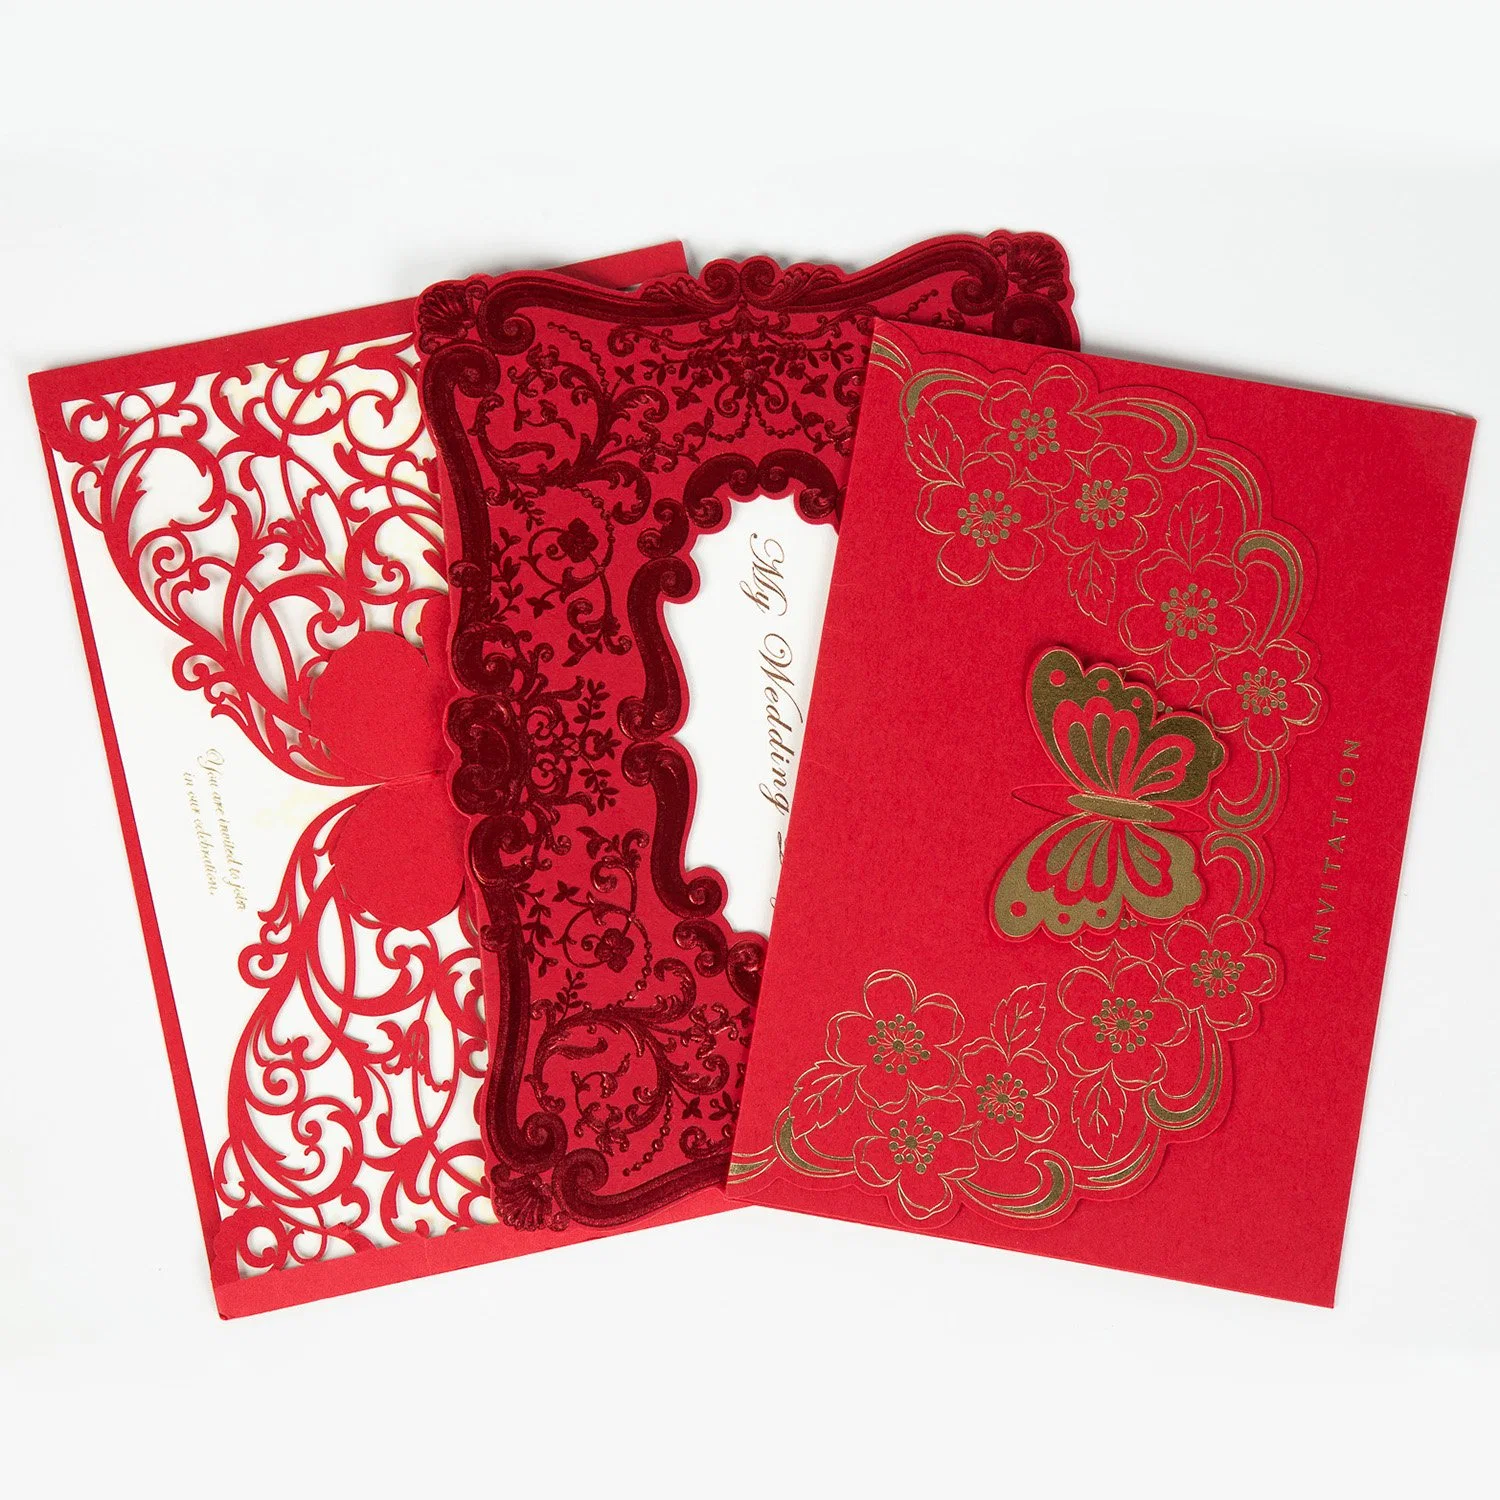 China Mayorista Nuevo Diseño Tarjeta de Mensaje Tallada Hueca Regalo Creativo Tarjetas de Felicitación Postales Invitaciones de Boda Tarjeta de Invitación de Año Nuevo Cumpleaños Fiesta.